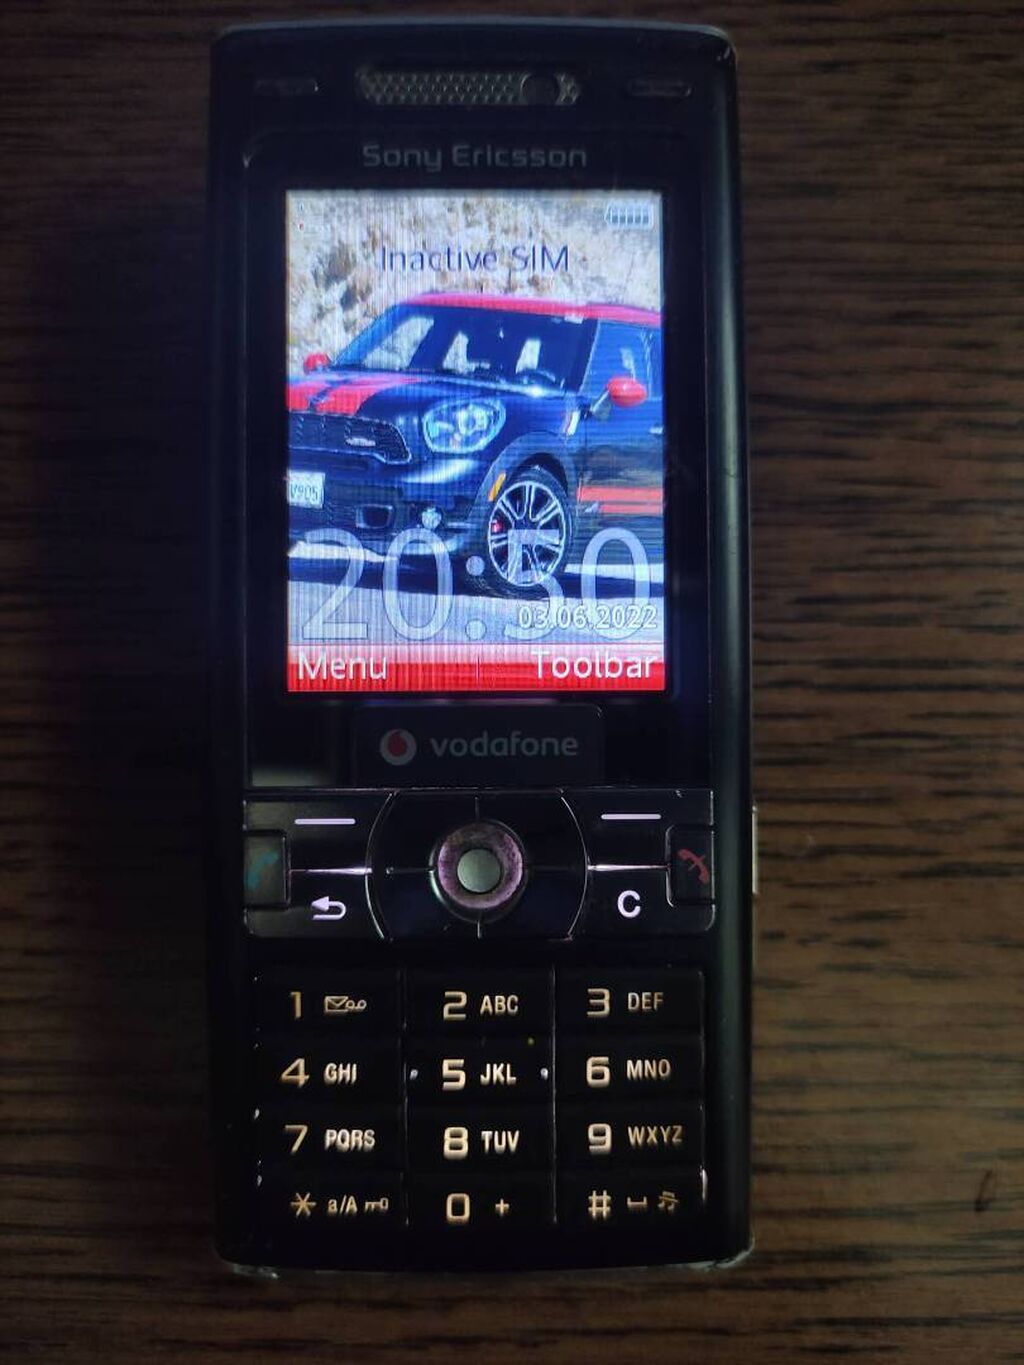 Sony Ericsson K800i telefon je u ispravnom stanju, prodaje 2400 RSD | Oglas postavljen 04 Jul 2022 19:39:51: Sony Ericsson K800i telefon je u ispravnom stanju, prodaje se sa